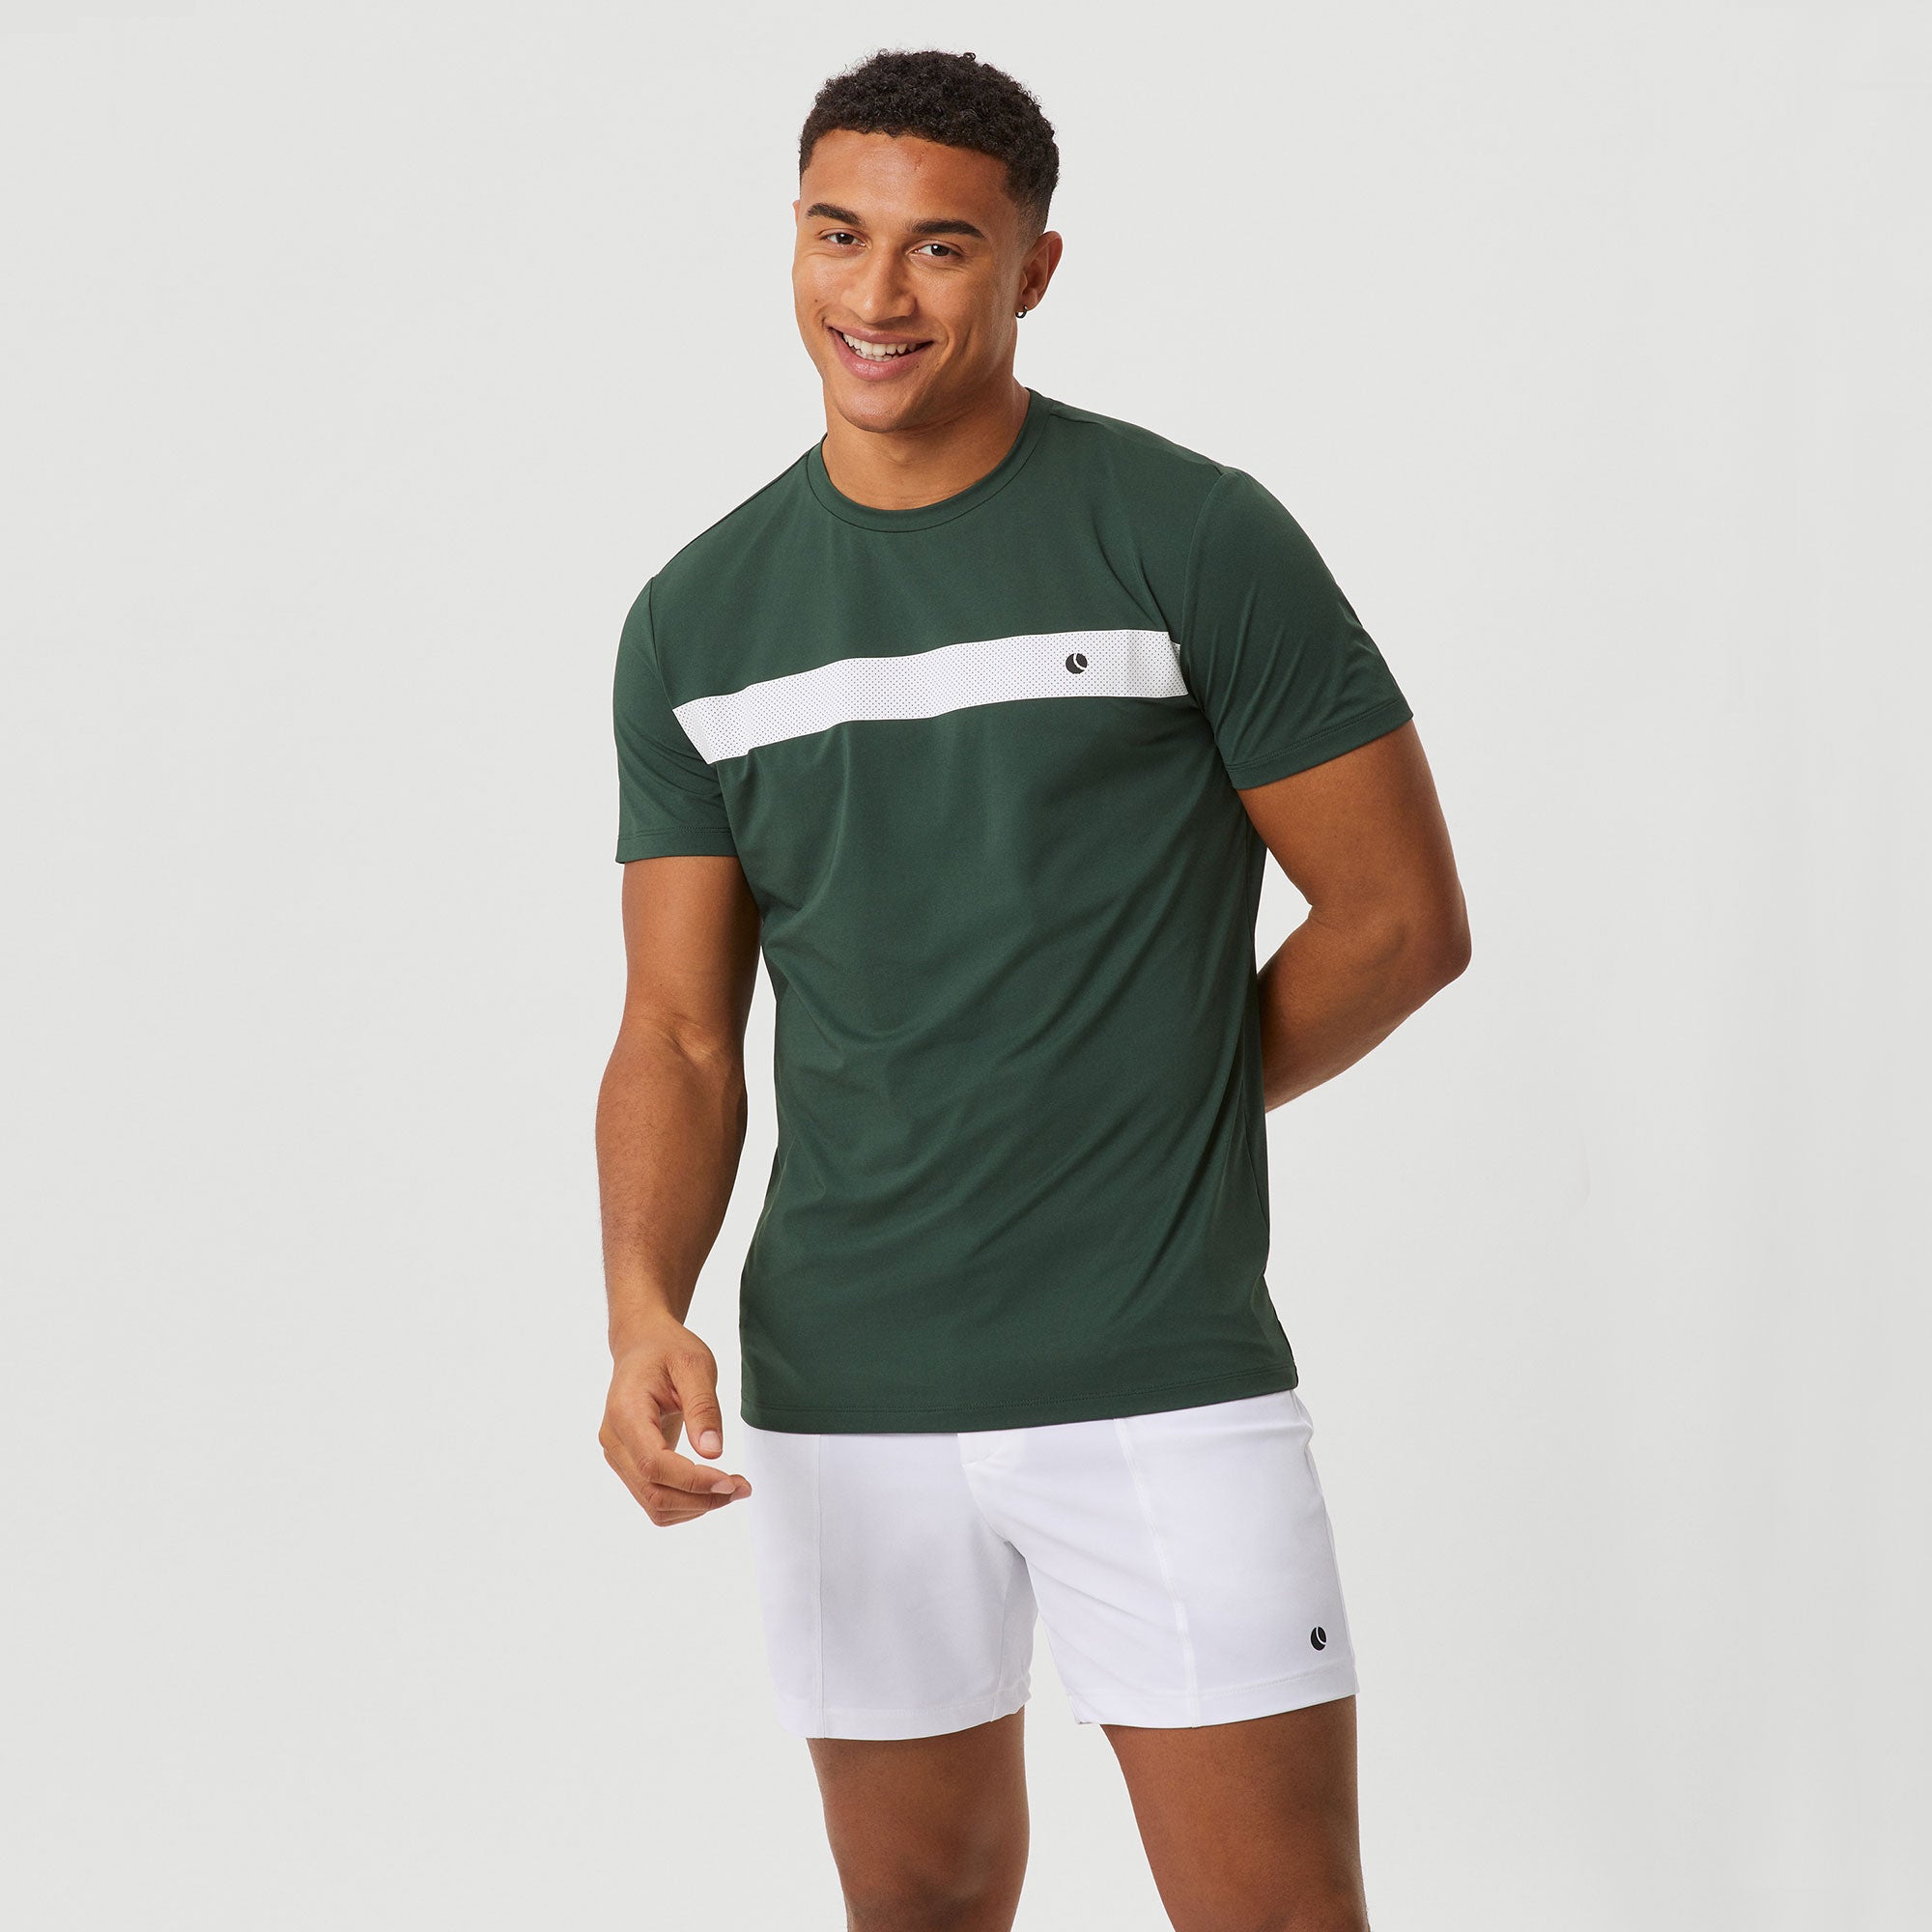 Björn Borg Ace Men's Light Tennis Shirt - Green (1)